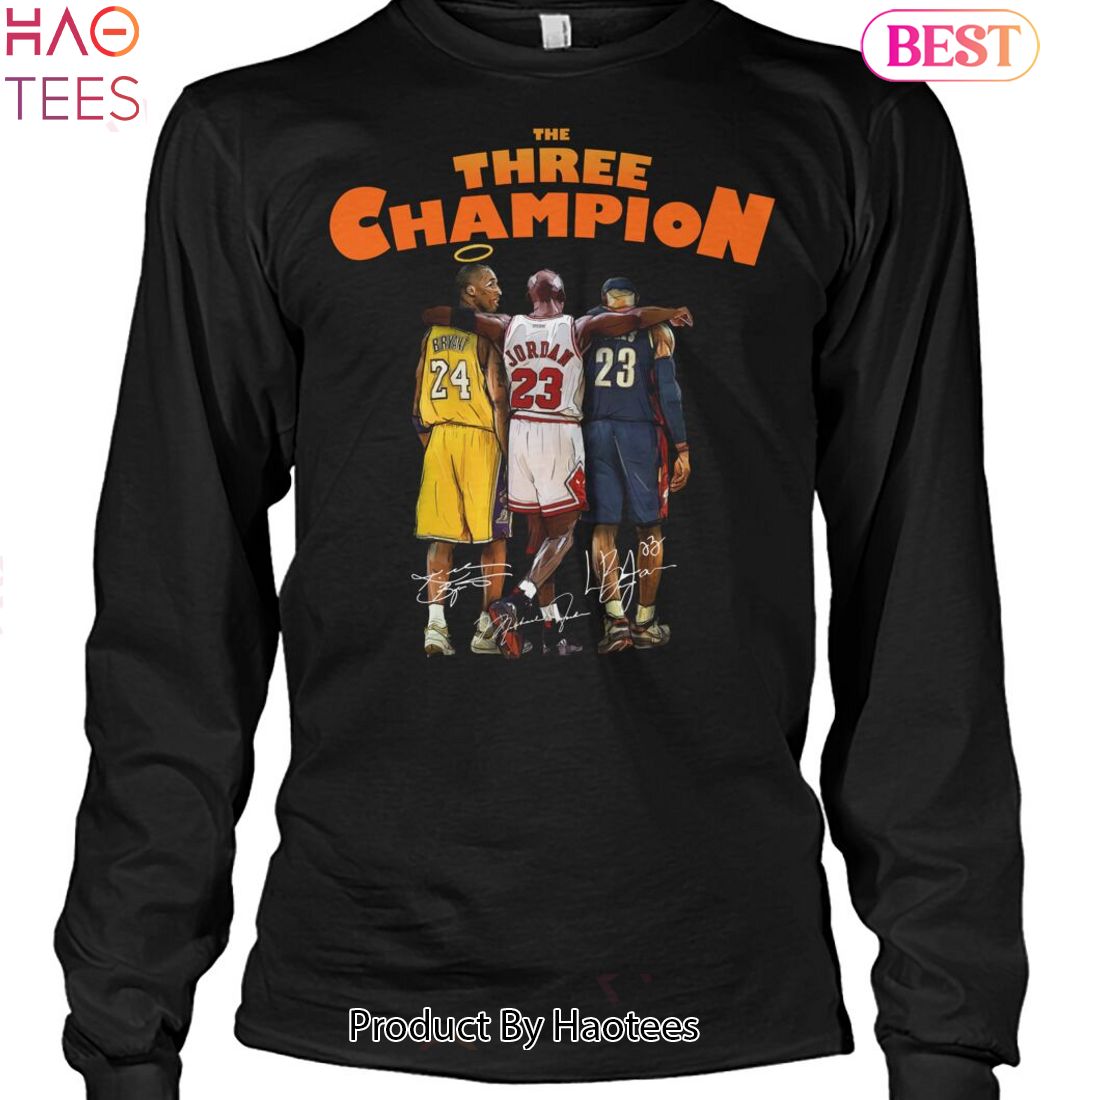 HOT TREND The Three Champion Kobe Bryant Unisex T-Shirt